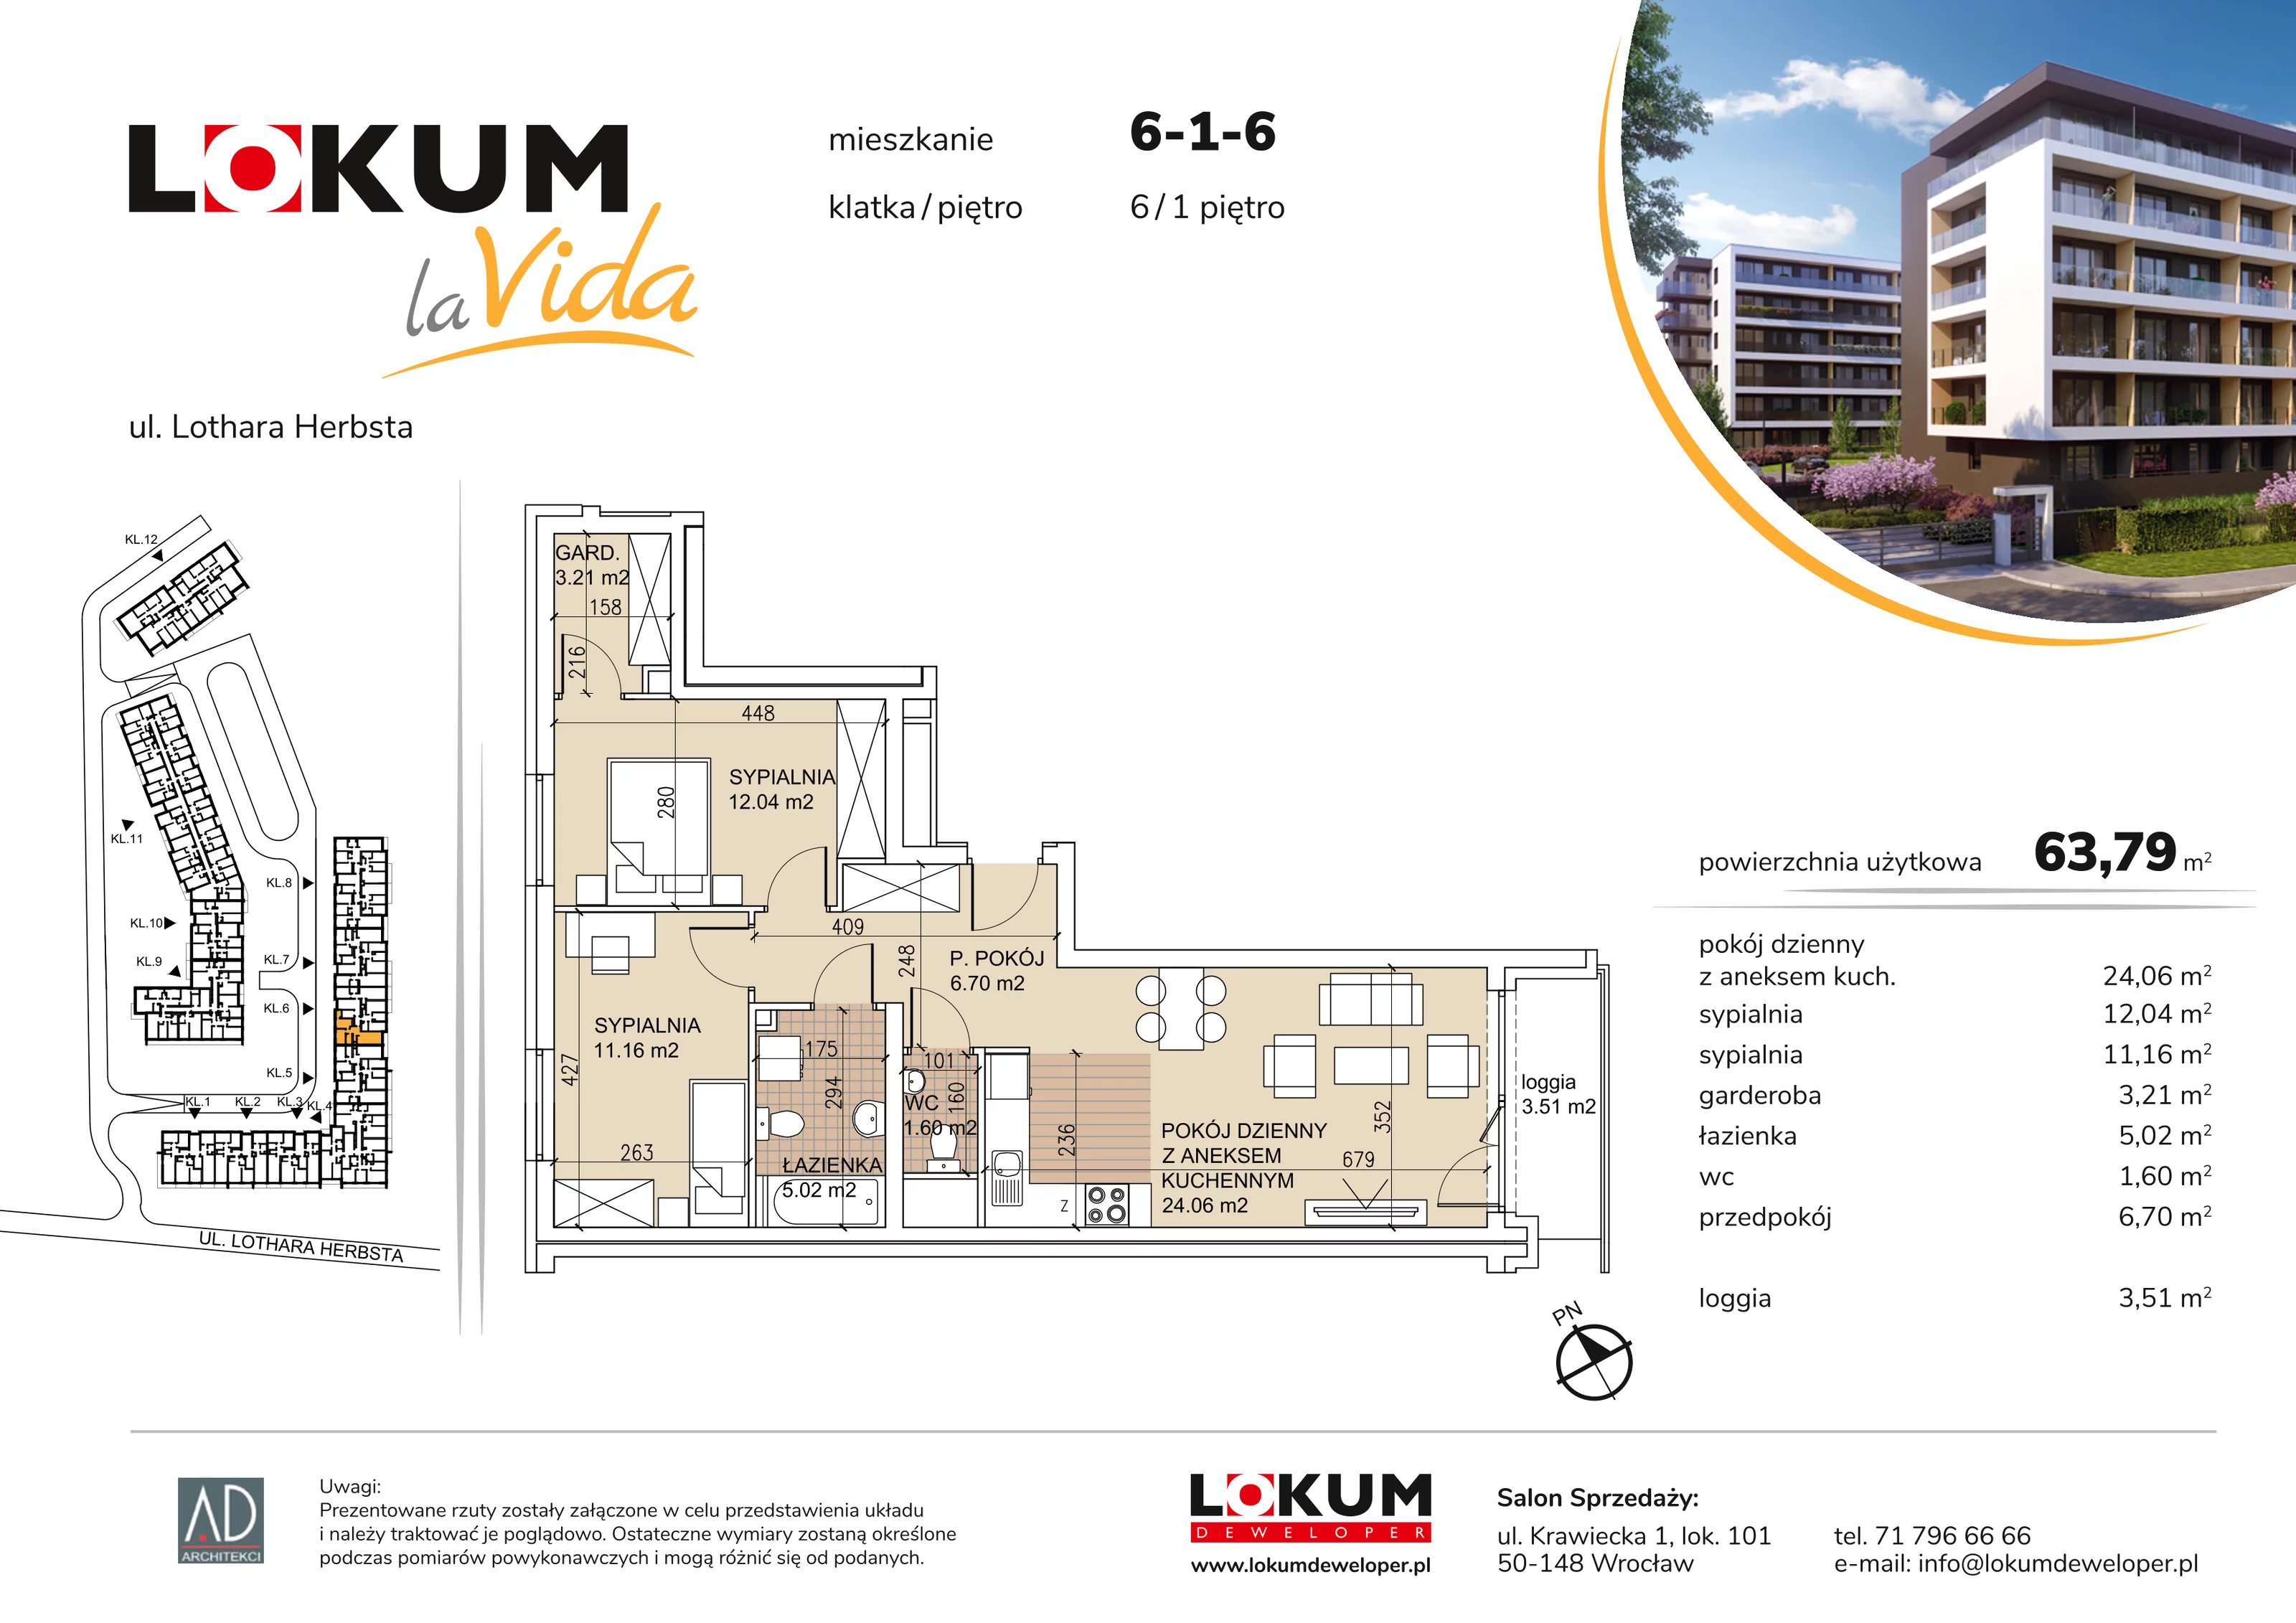 Mieszkanie 63,79 m², piętro 1, oferta nr 6-1-6, Lokum la Vida, Wrocław, Sołtysowice, ul. Lothara Herbsta